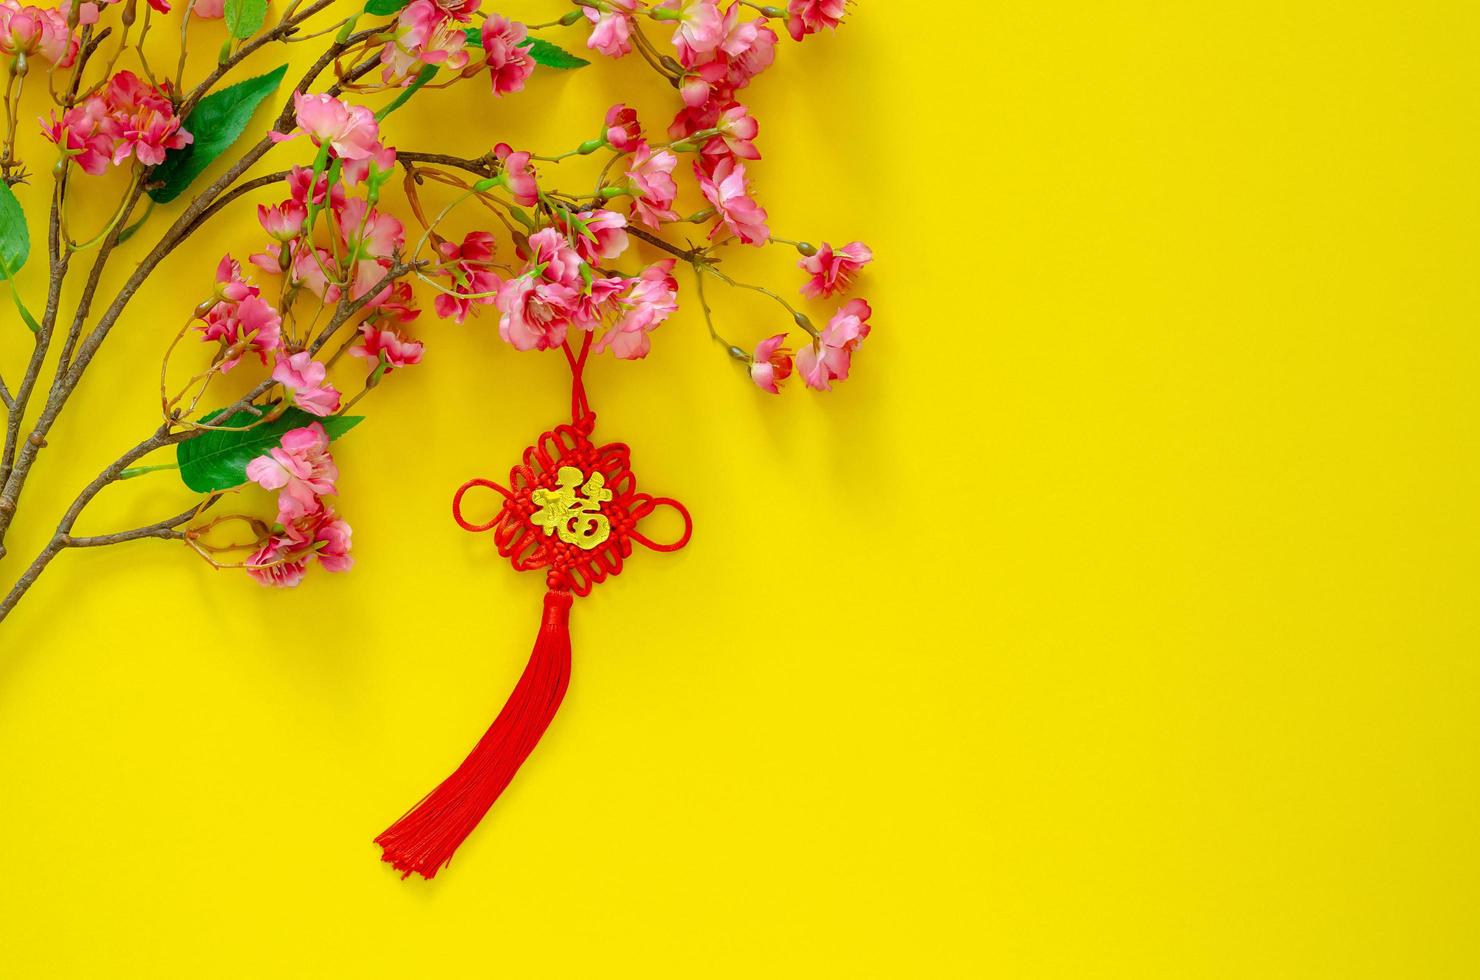 colgante colgante para adorno de año nuevo chino significado de palabra es  riqueza con flores chinas sobre fondo amarillo. 15229701 Foto de stock en  Vecteezy